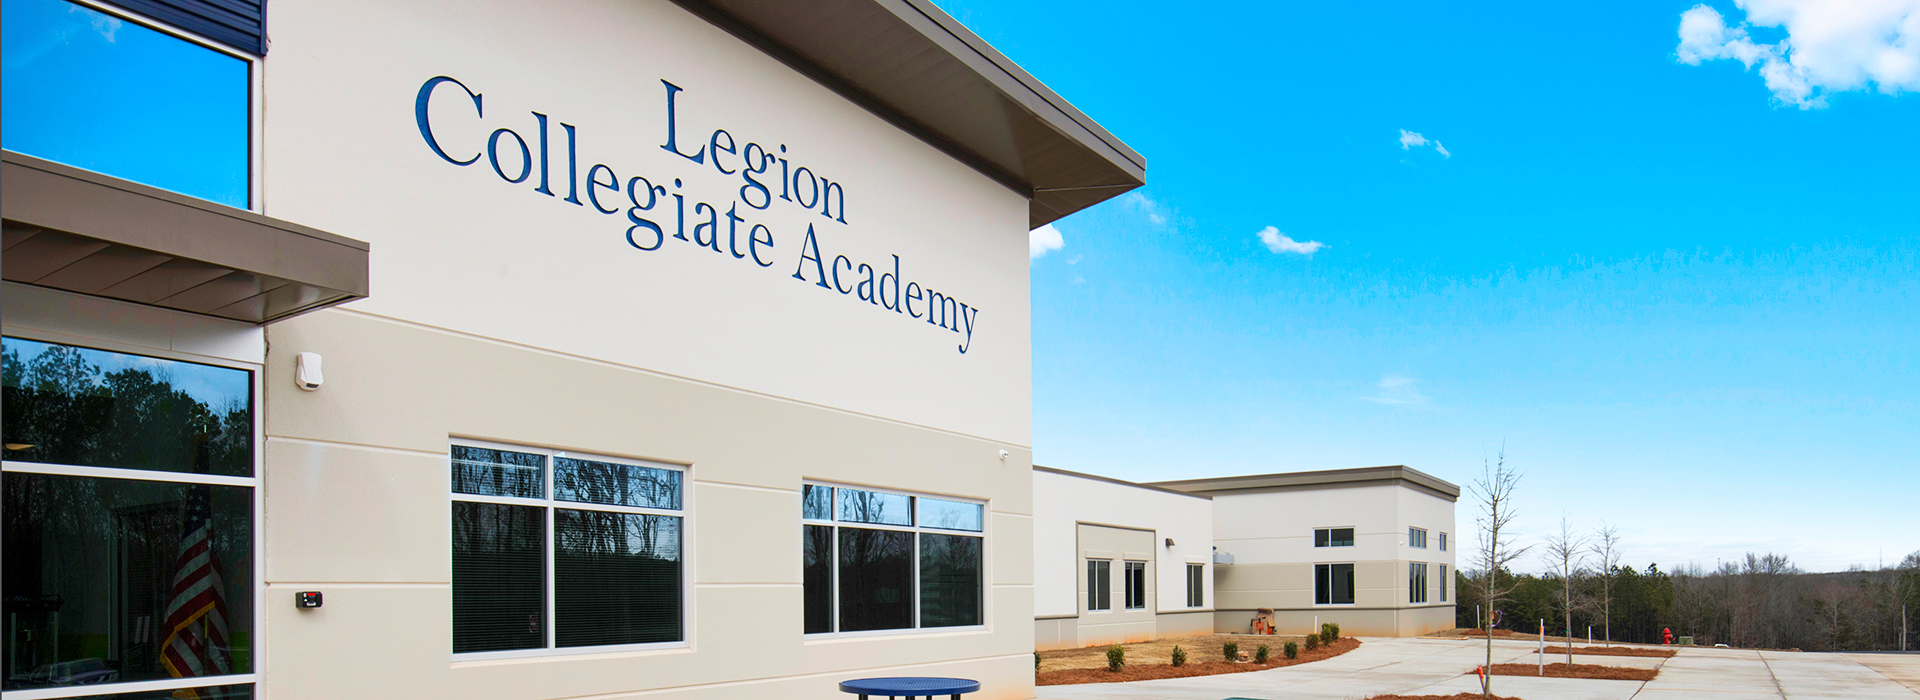 Legion Collegiate Academy